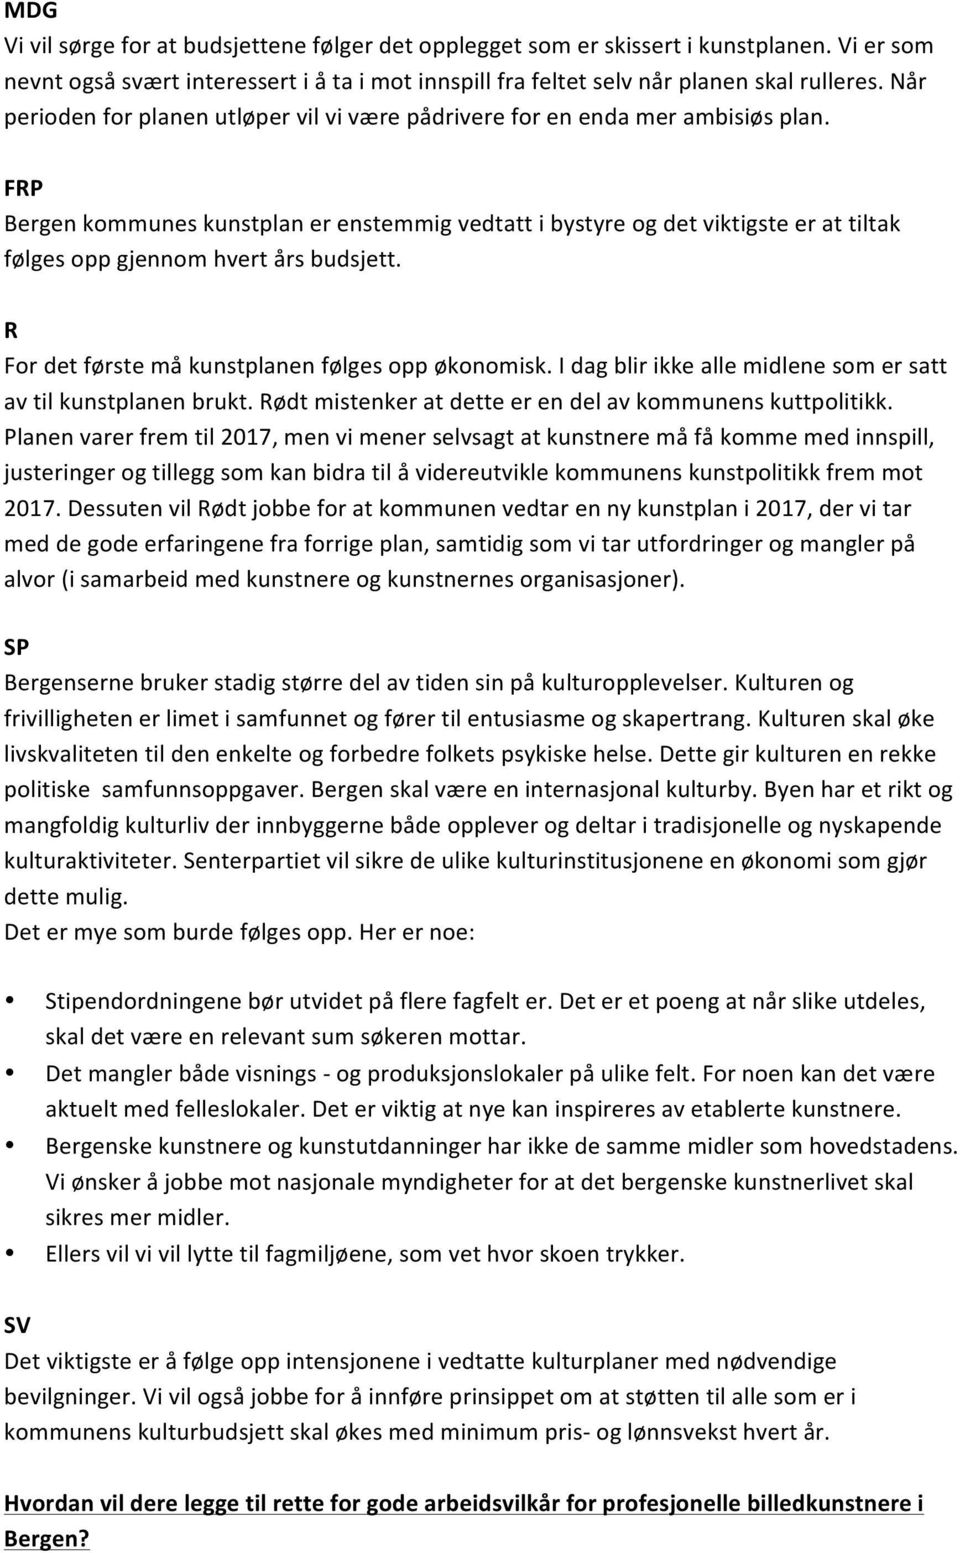 FP Bergen kommunes kunstplan er enstemmig vedtatt i bystyre og det viktigste er at tiltak følges opp gjennom hvert års budsjett. For det første må kunstplanen følges opp økonomisk.